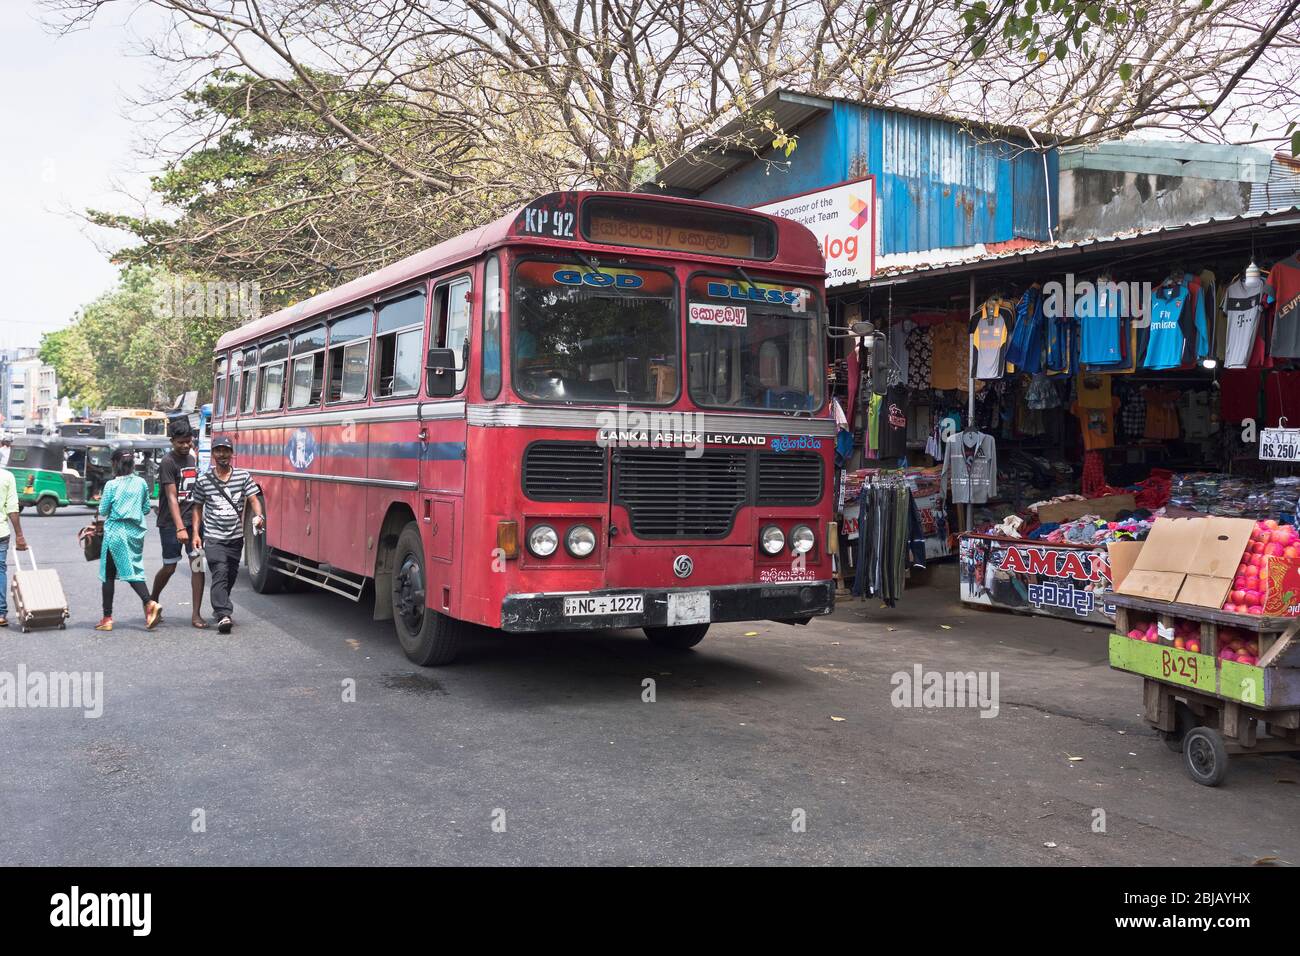 dh Lanka Ashok Leyland bus COLOMBO MERCATO SRI LANKA ASIA Mercato Asiatico trasporto pubblico bordo autobus rossi a un solo ponte locale viaggi Foto Stock